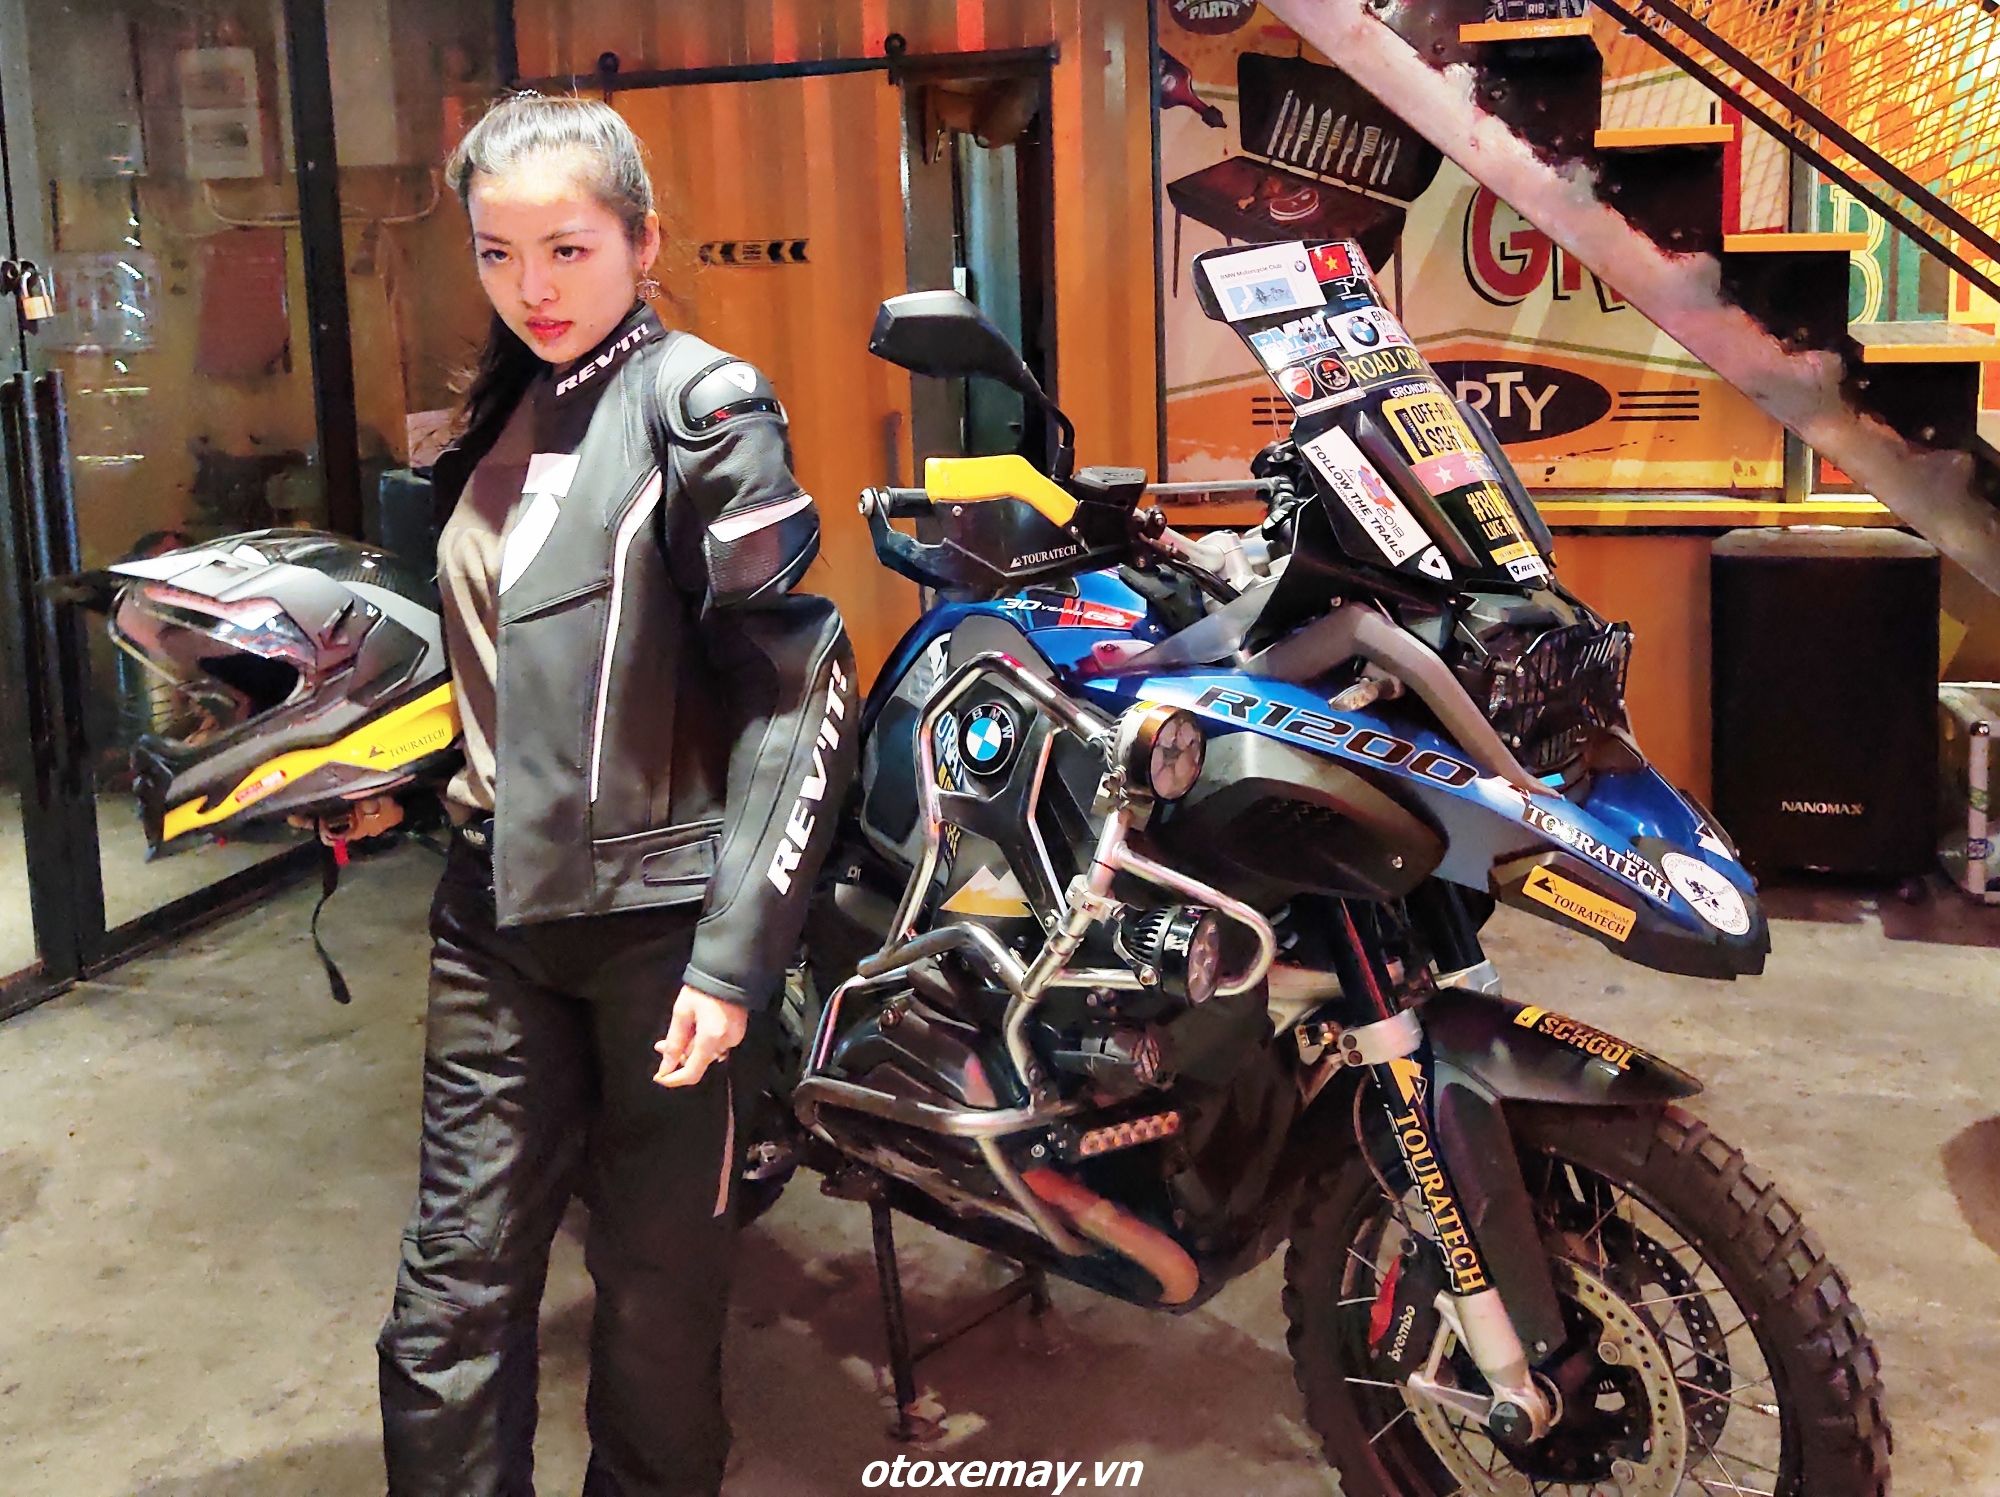 Thêm lựa chọn phụ kiện bảo hộ hàng hiệu Rev’it từ Hà Lan cho biker Việt